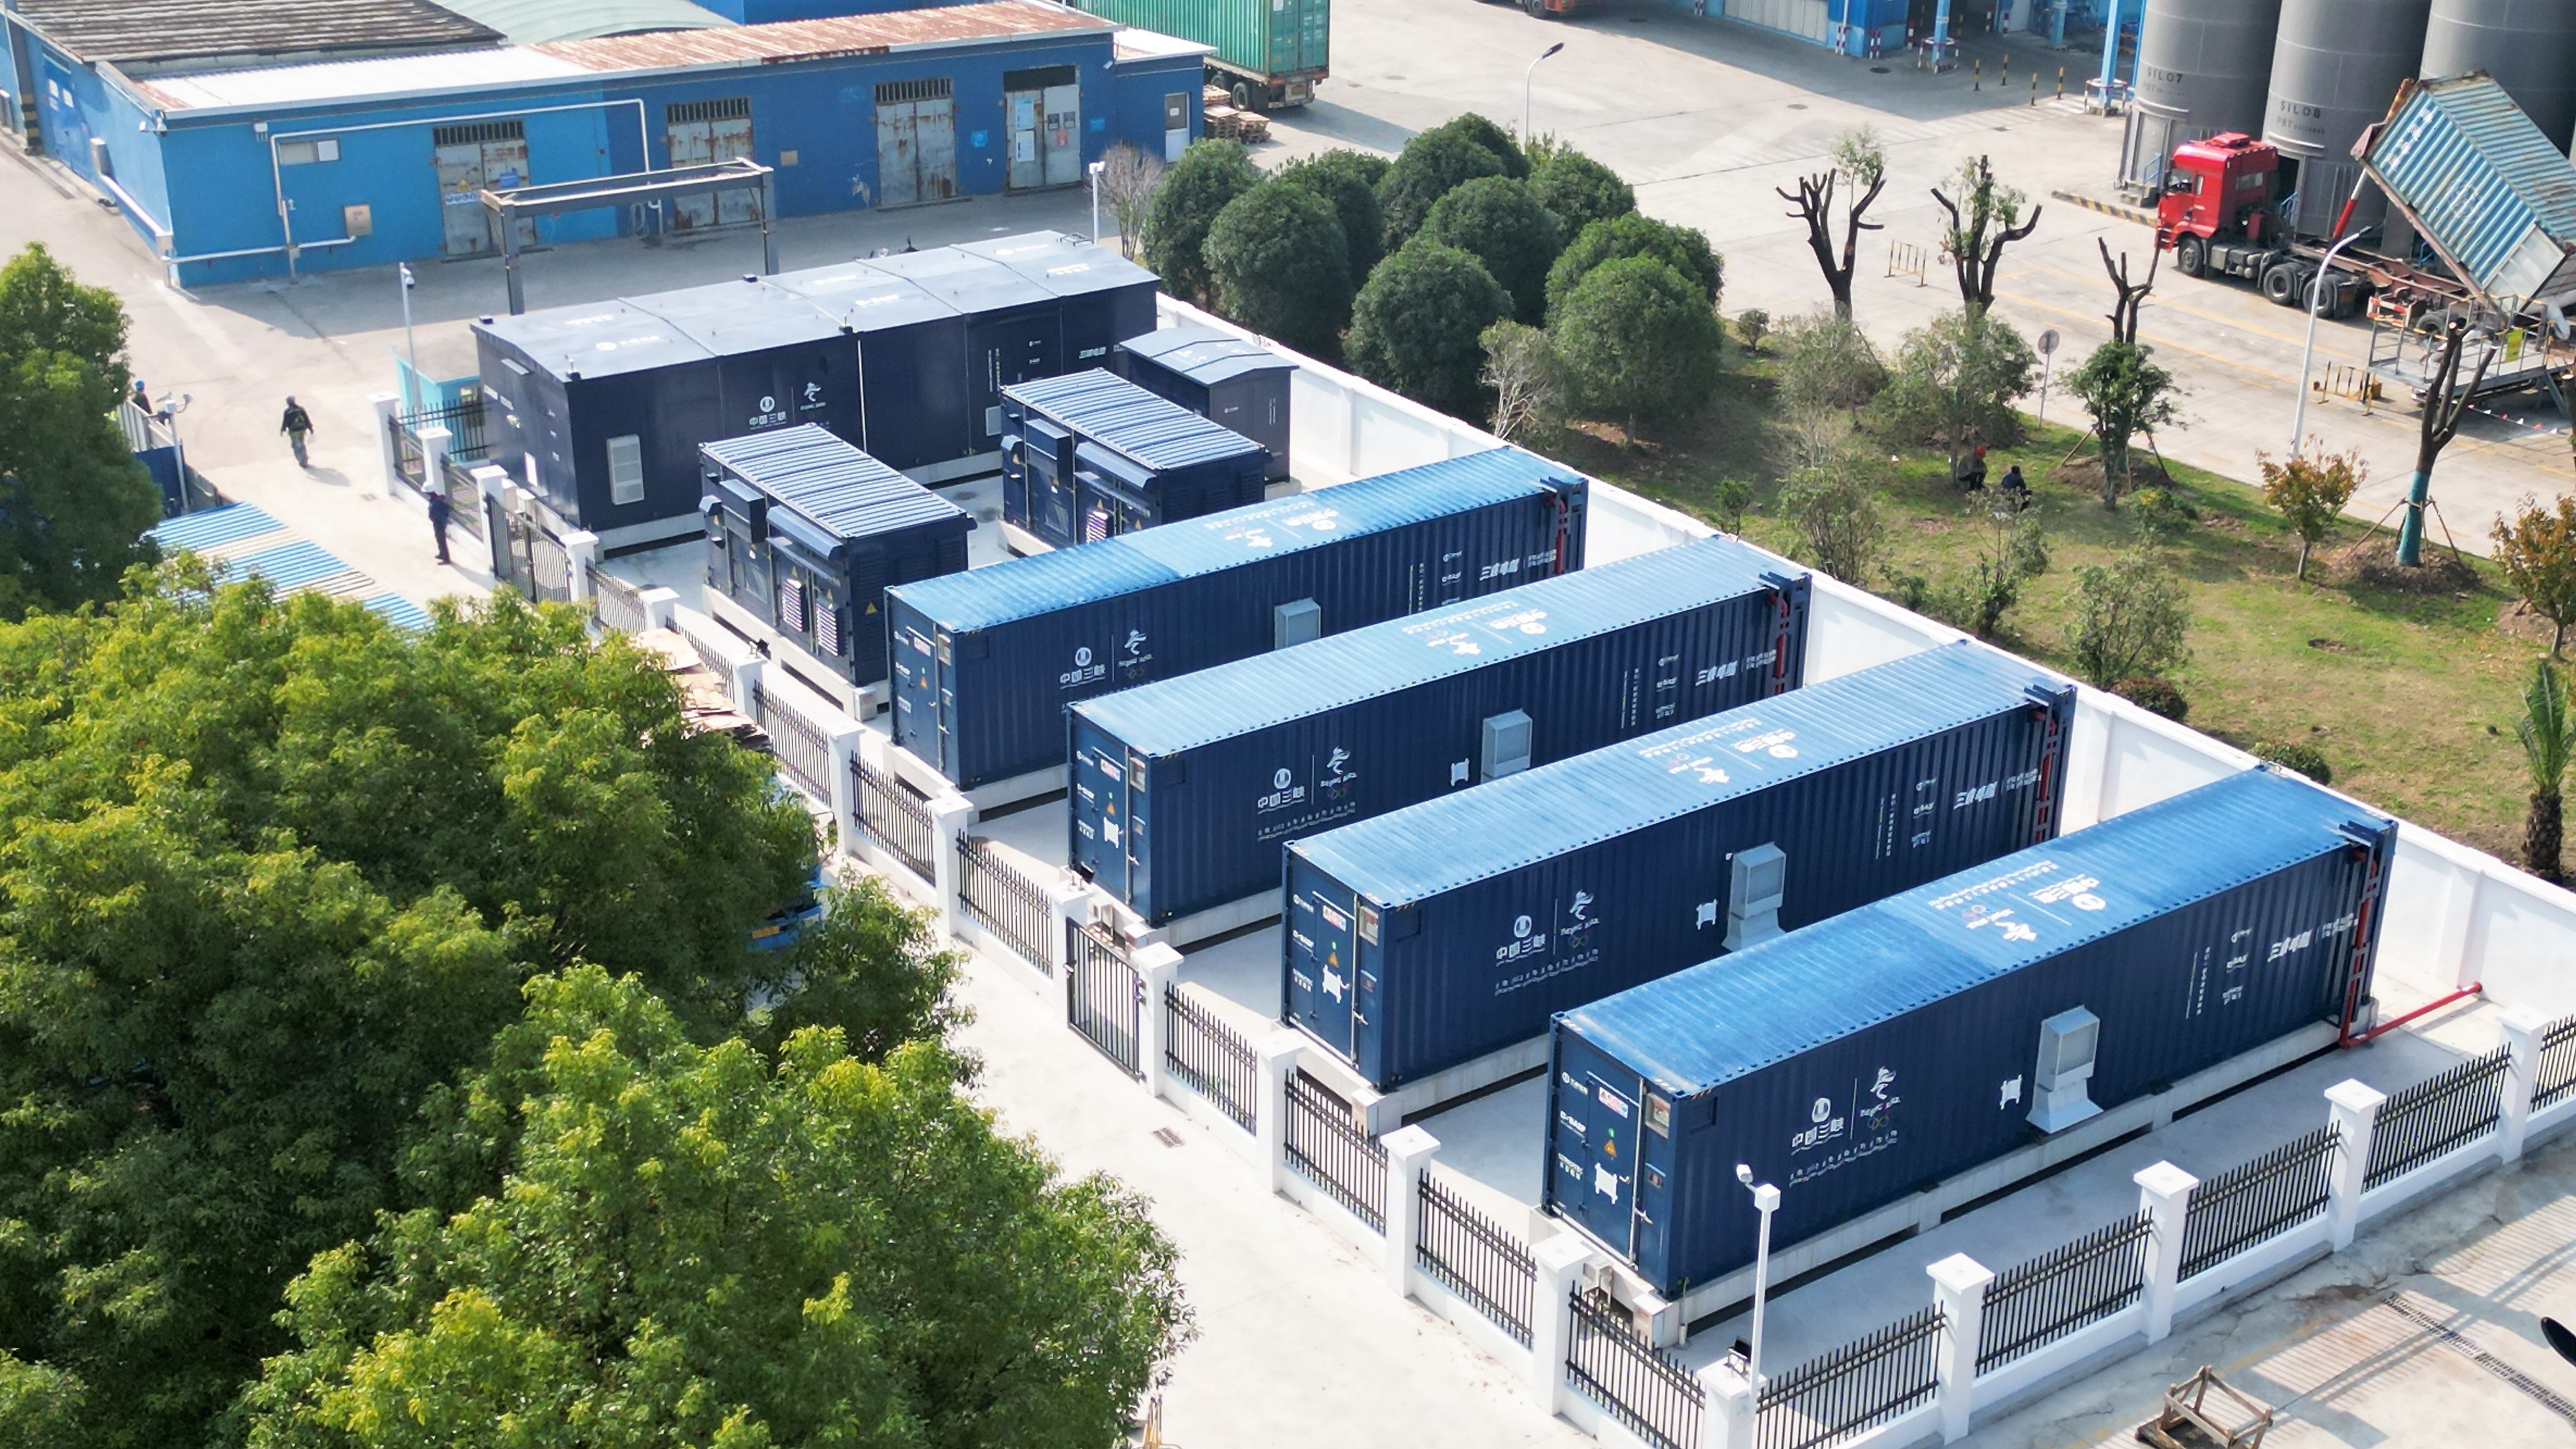 巴斯夫在国内的首个企业储能电站在大中华区总部投入运营